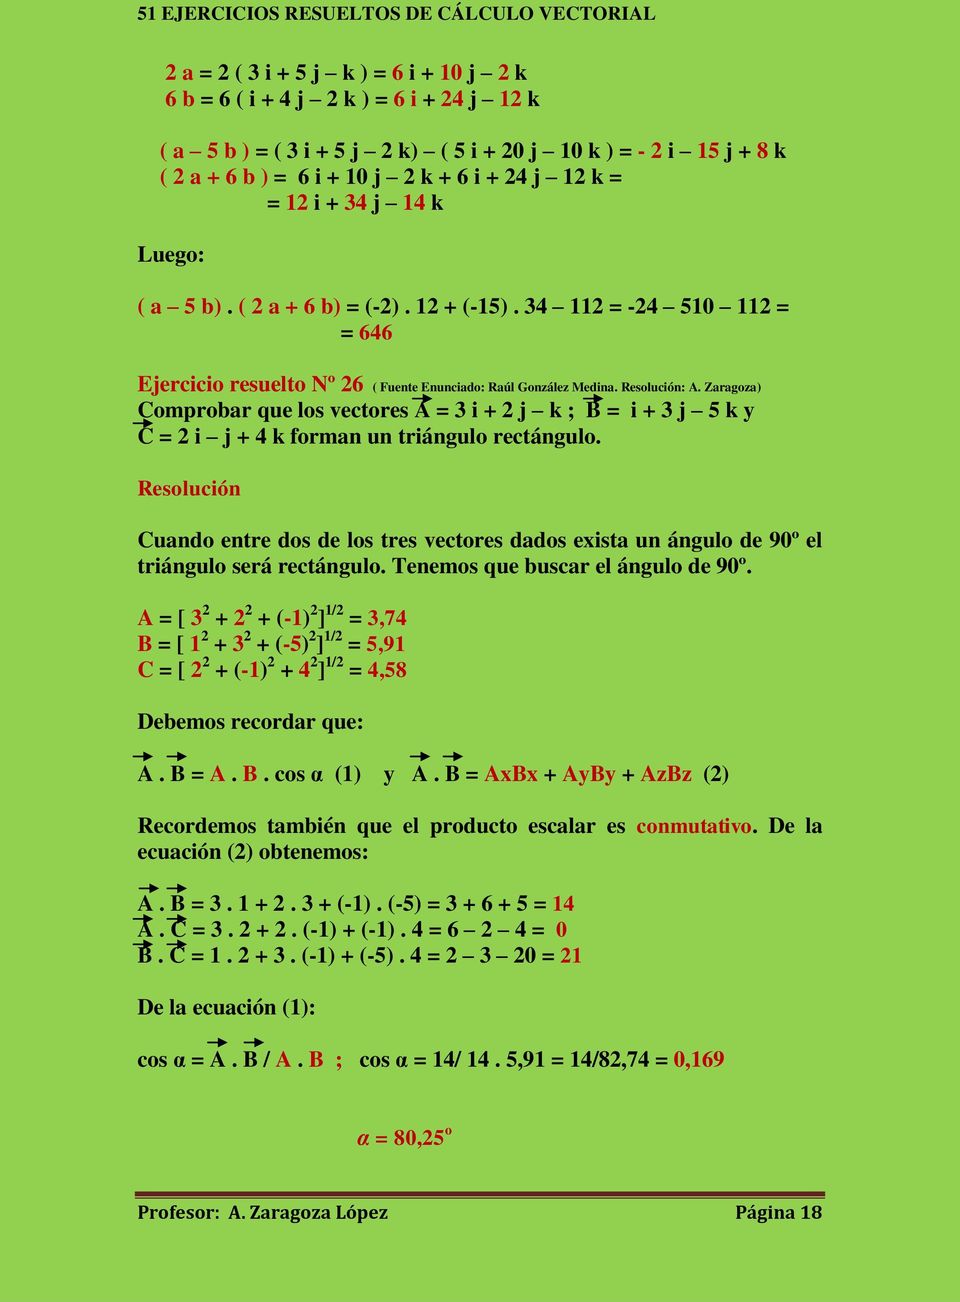 Zaragoza) Comprobar que los vectores A = 3 i + 2 j k ; B = i + 3 j 5 k y C = 2 i j + 4 k forman un triángulo rectángulo.